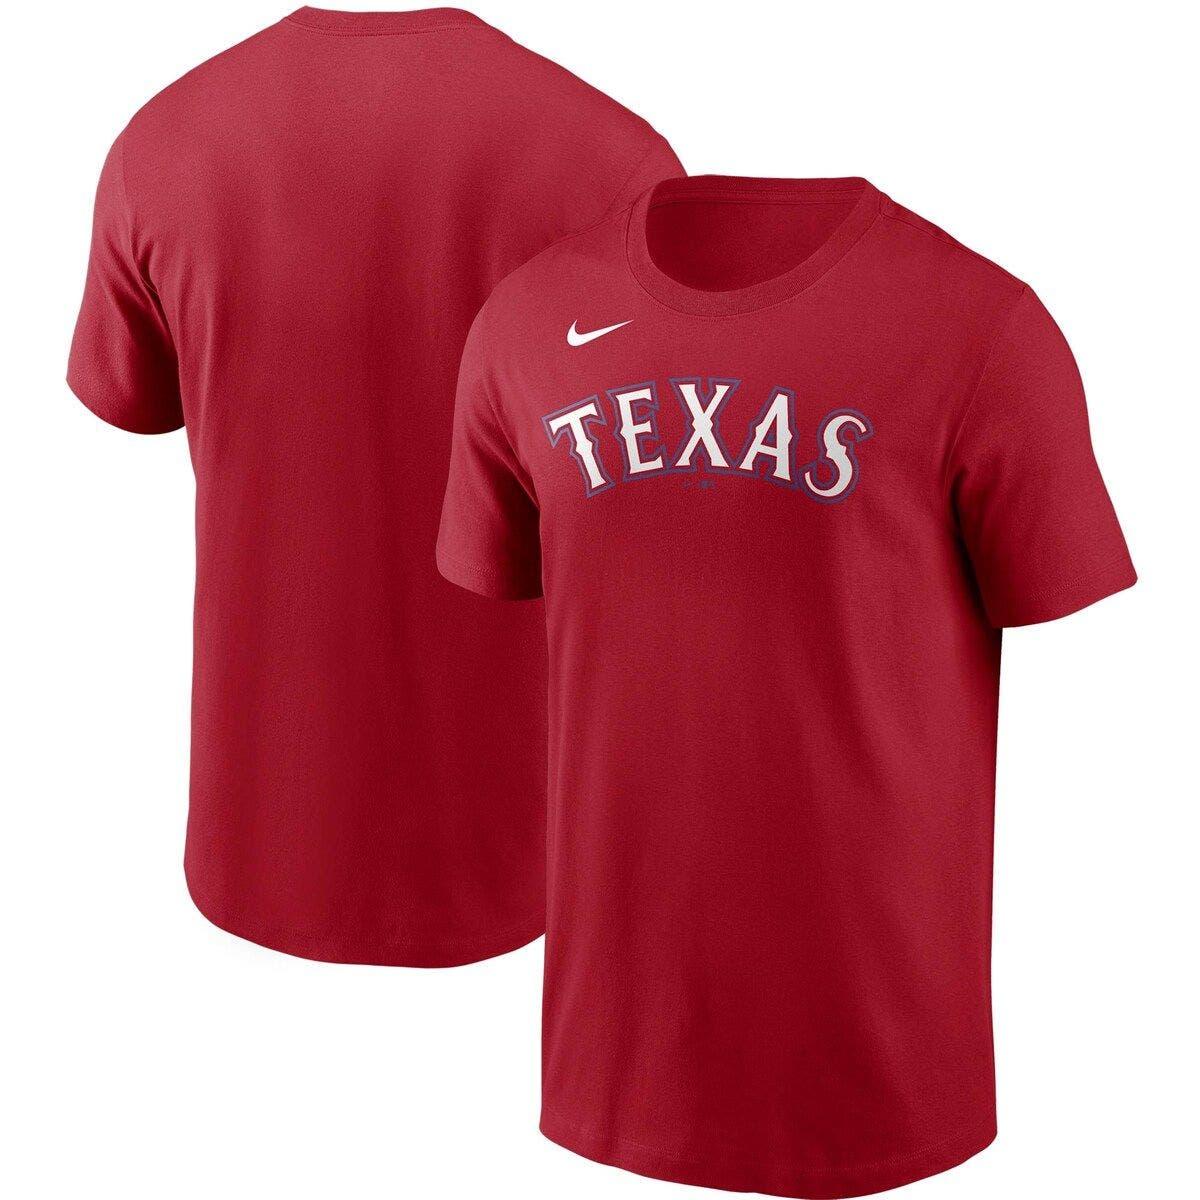 red texas rangers shirt